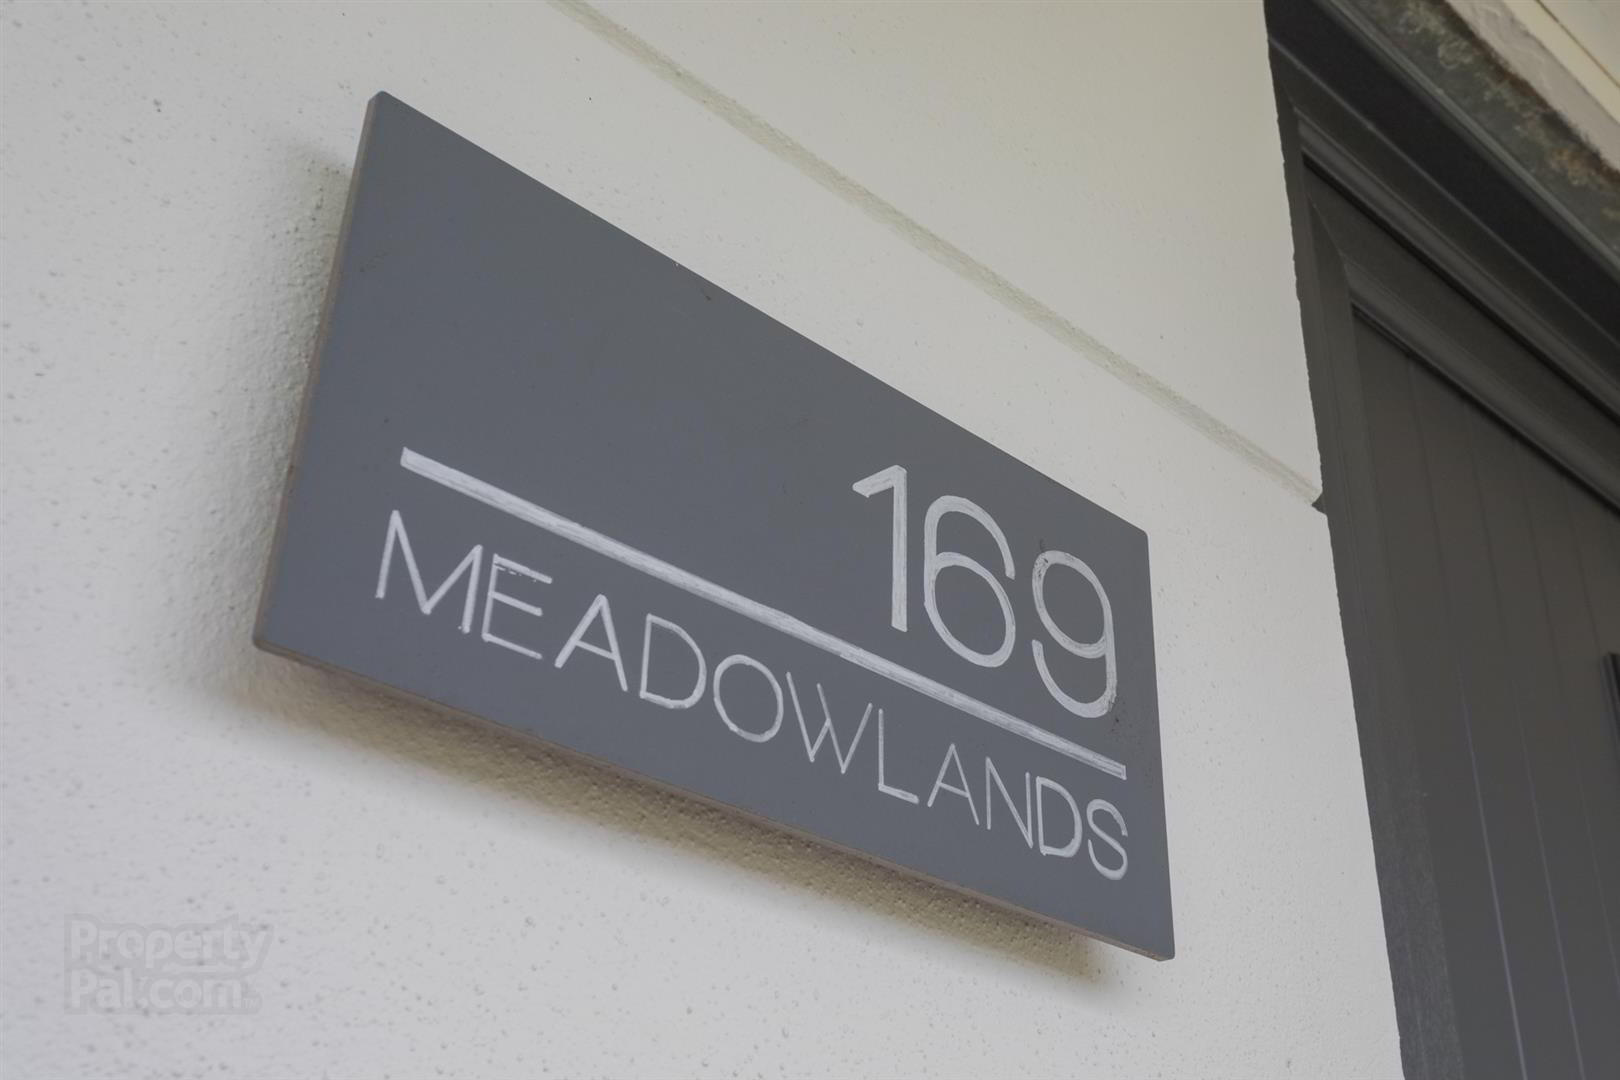 169 Meadow Lands